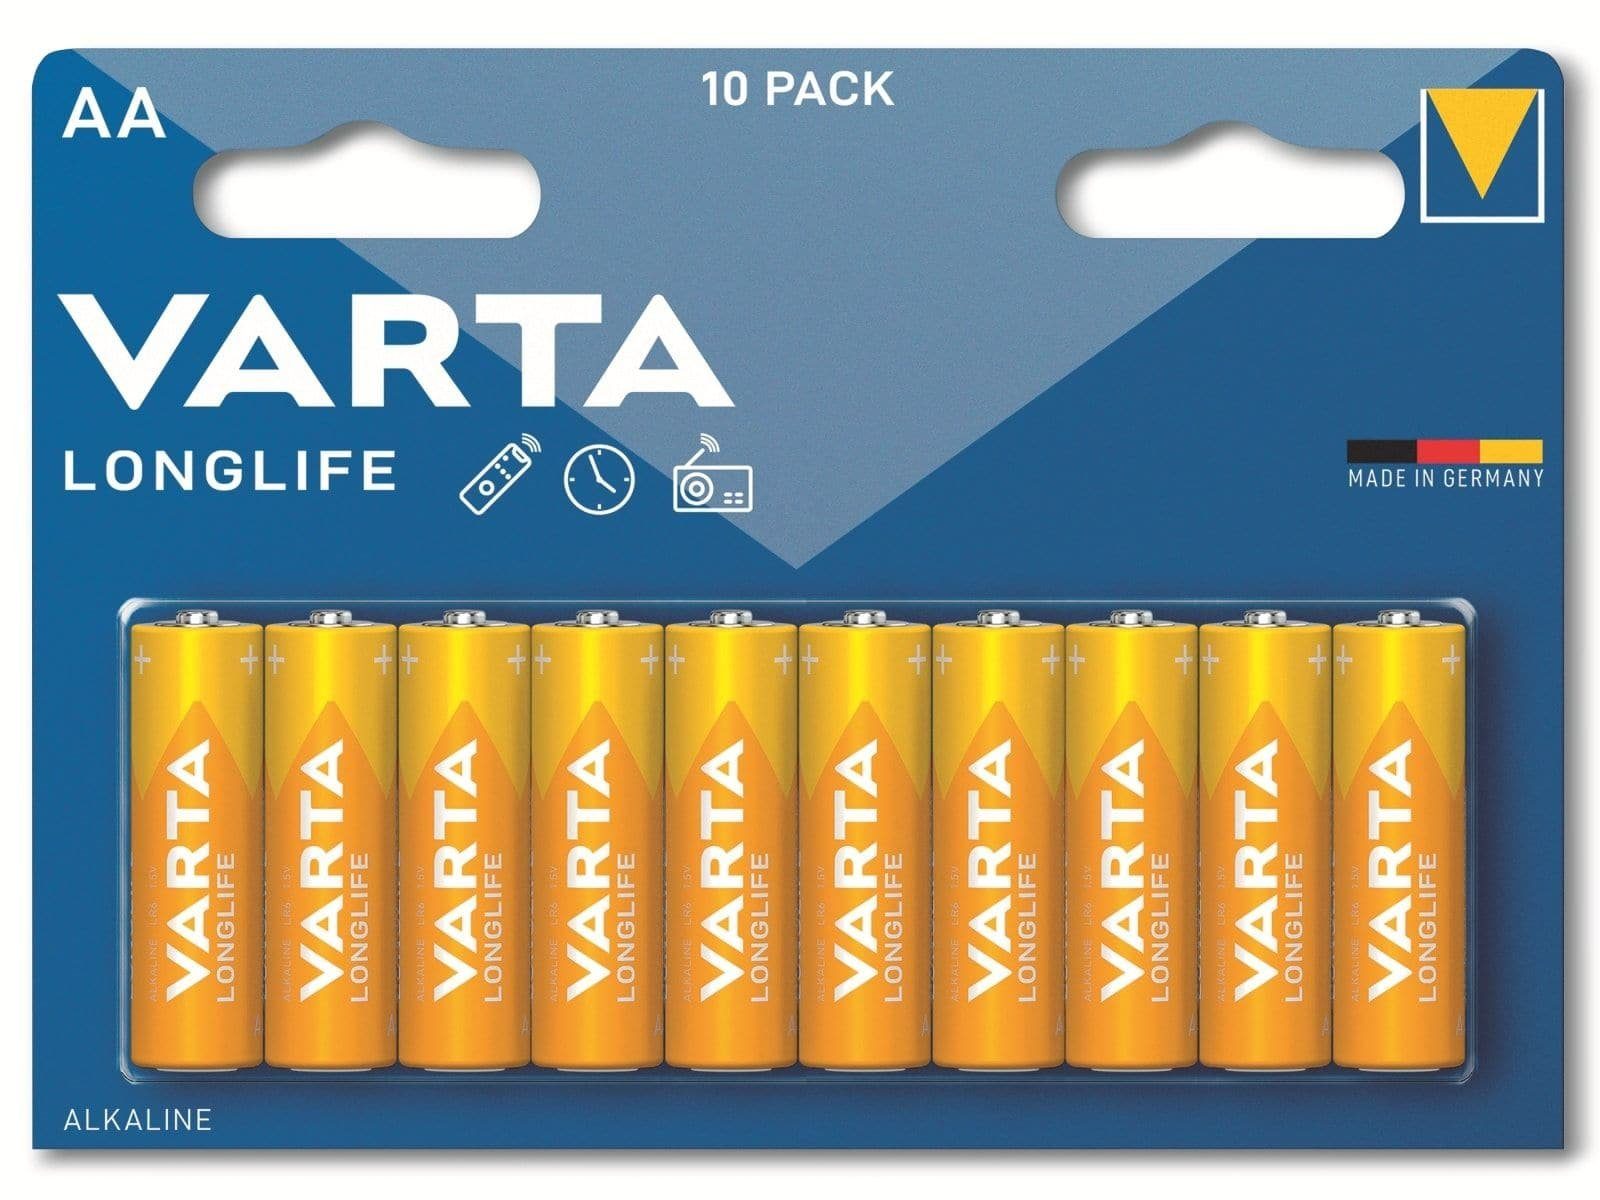 VARTA VARTA Batterie Alkaline, Mignon, AA, LR06, 1.5V Batterie